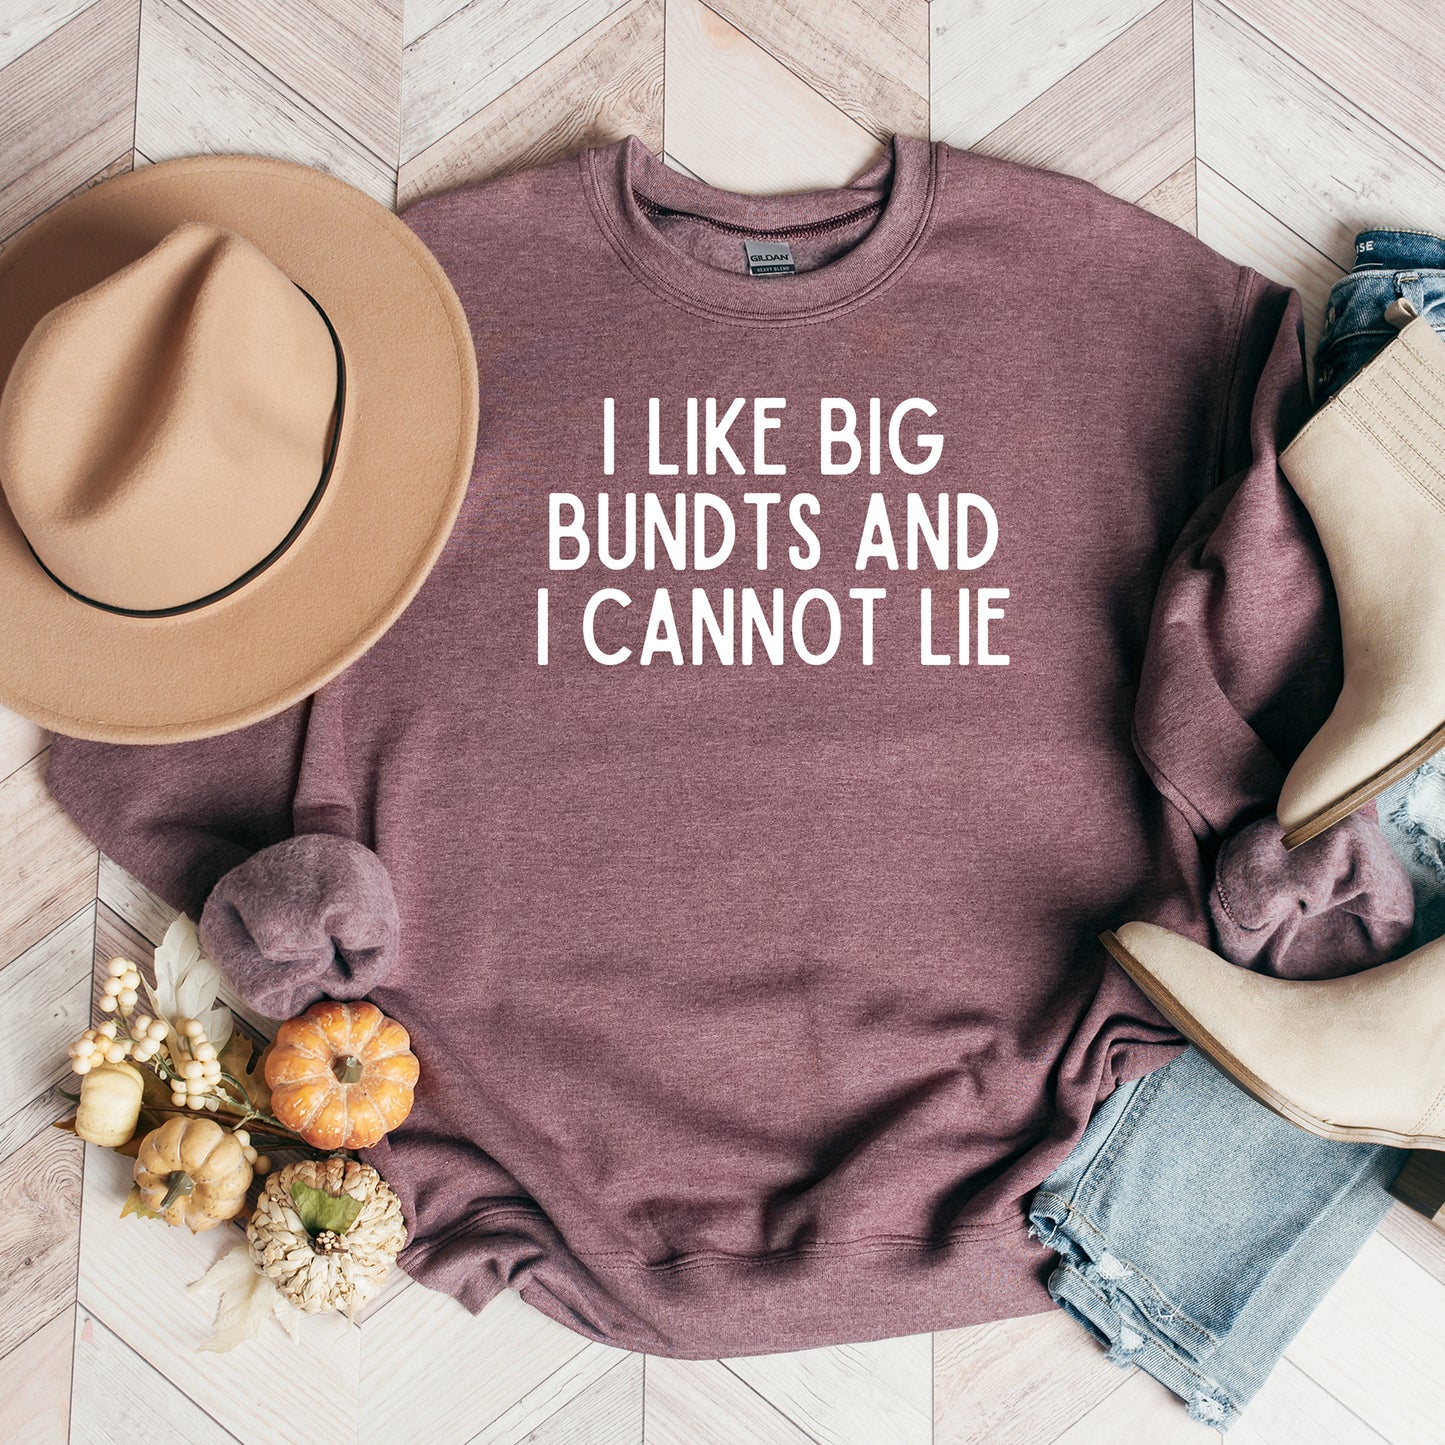 I Like Big Bundts | Sweatshirt